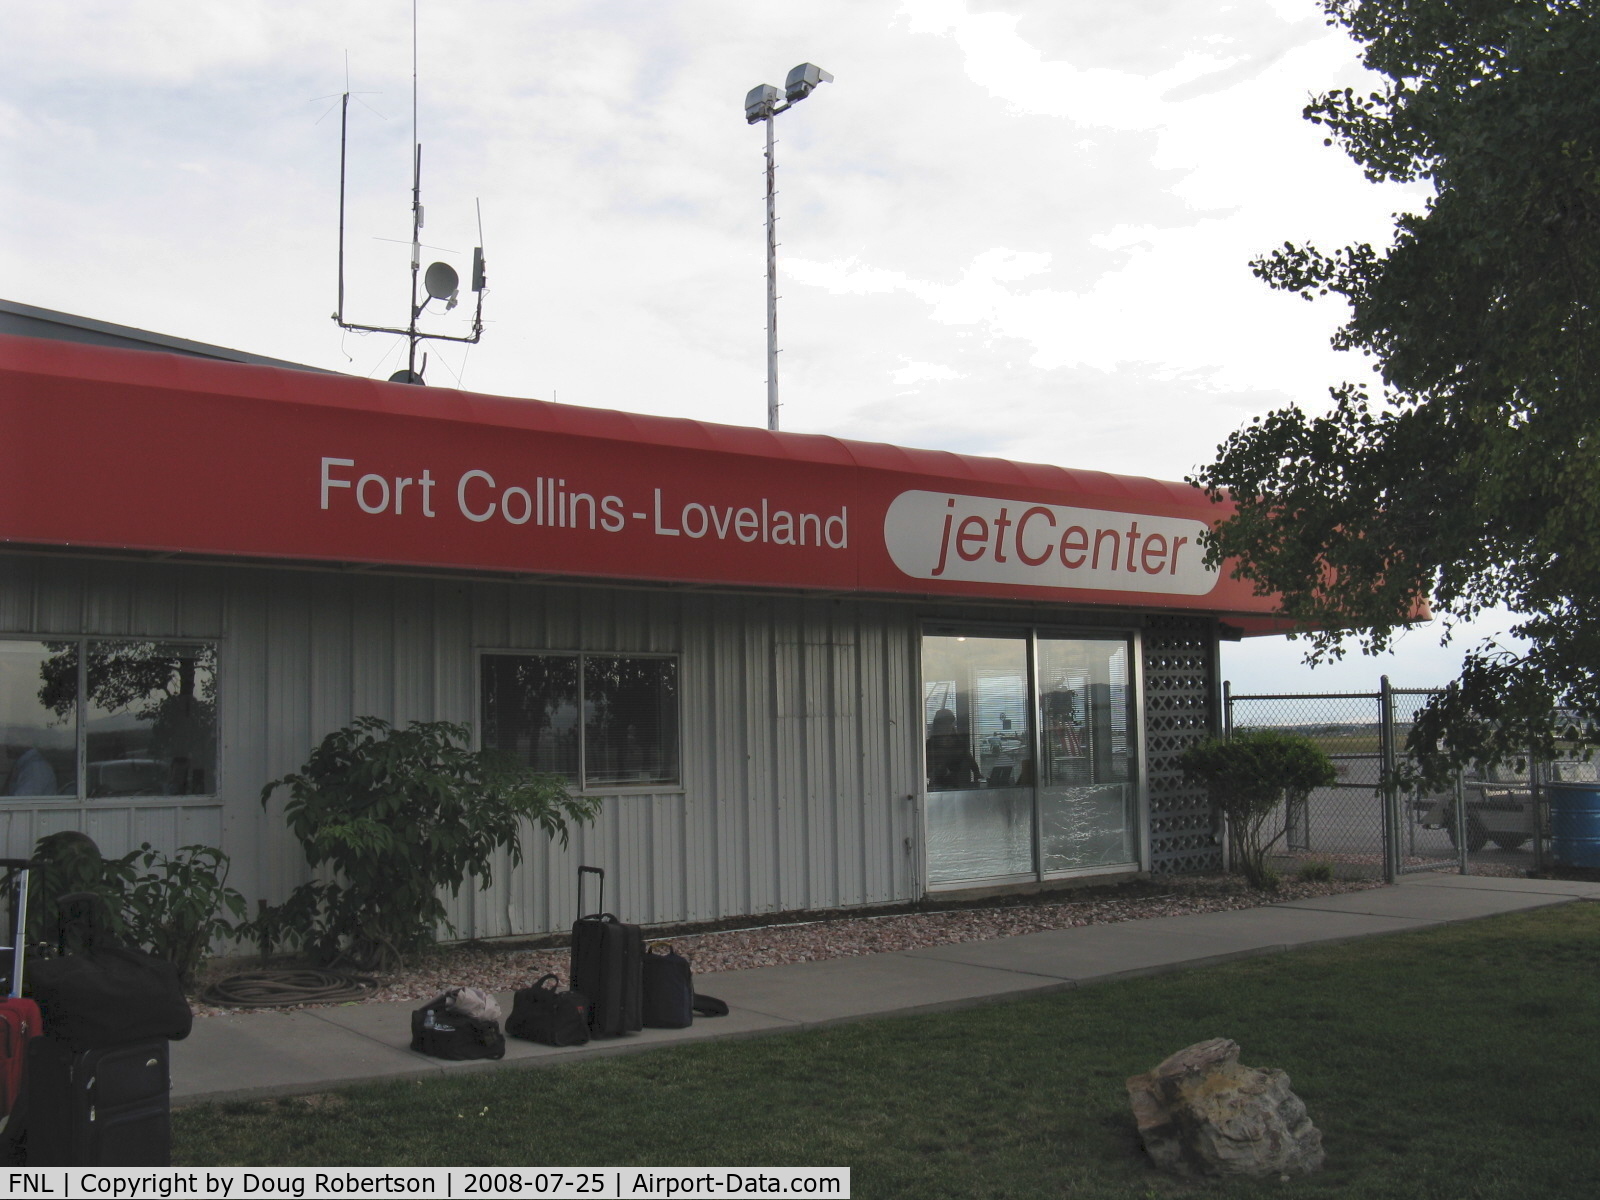 Fort Collins-loveland Municipal Airport (FNL) - JetCenter FBO